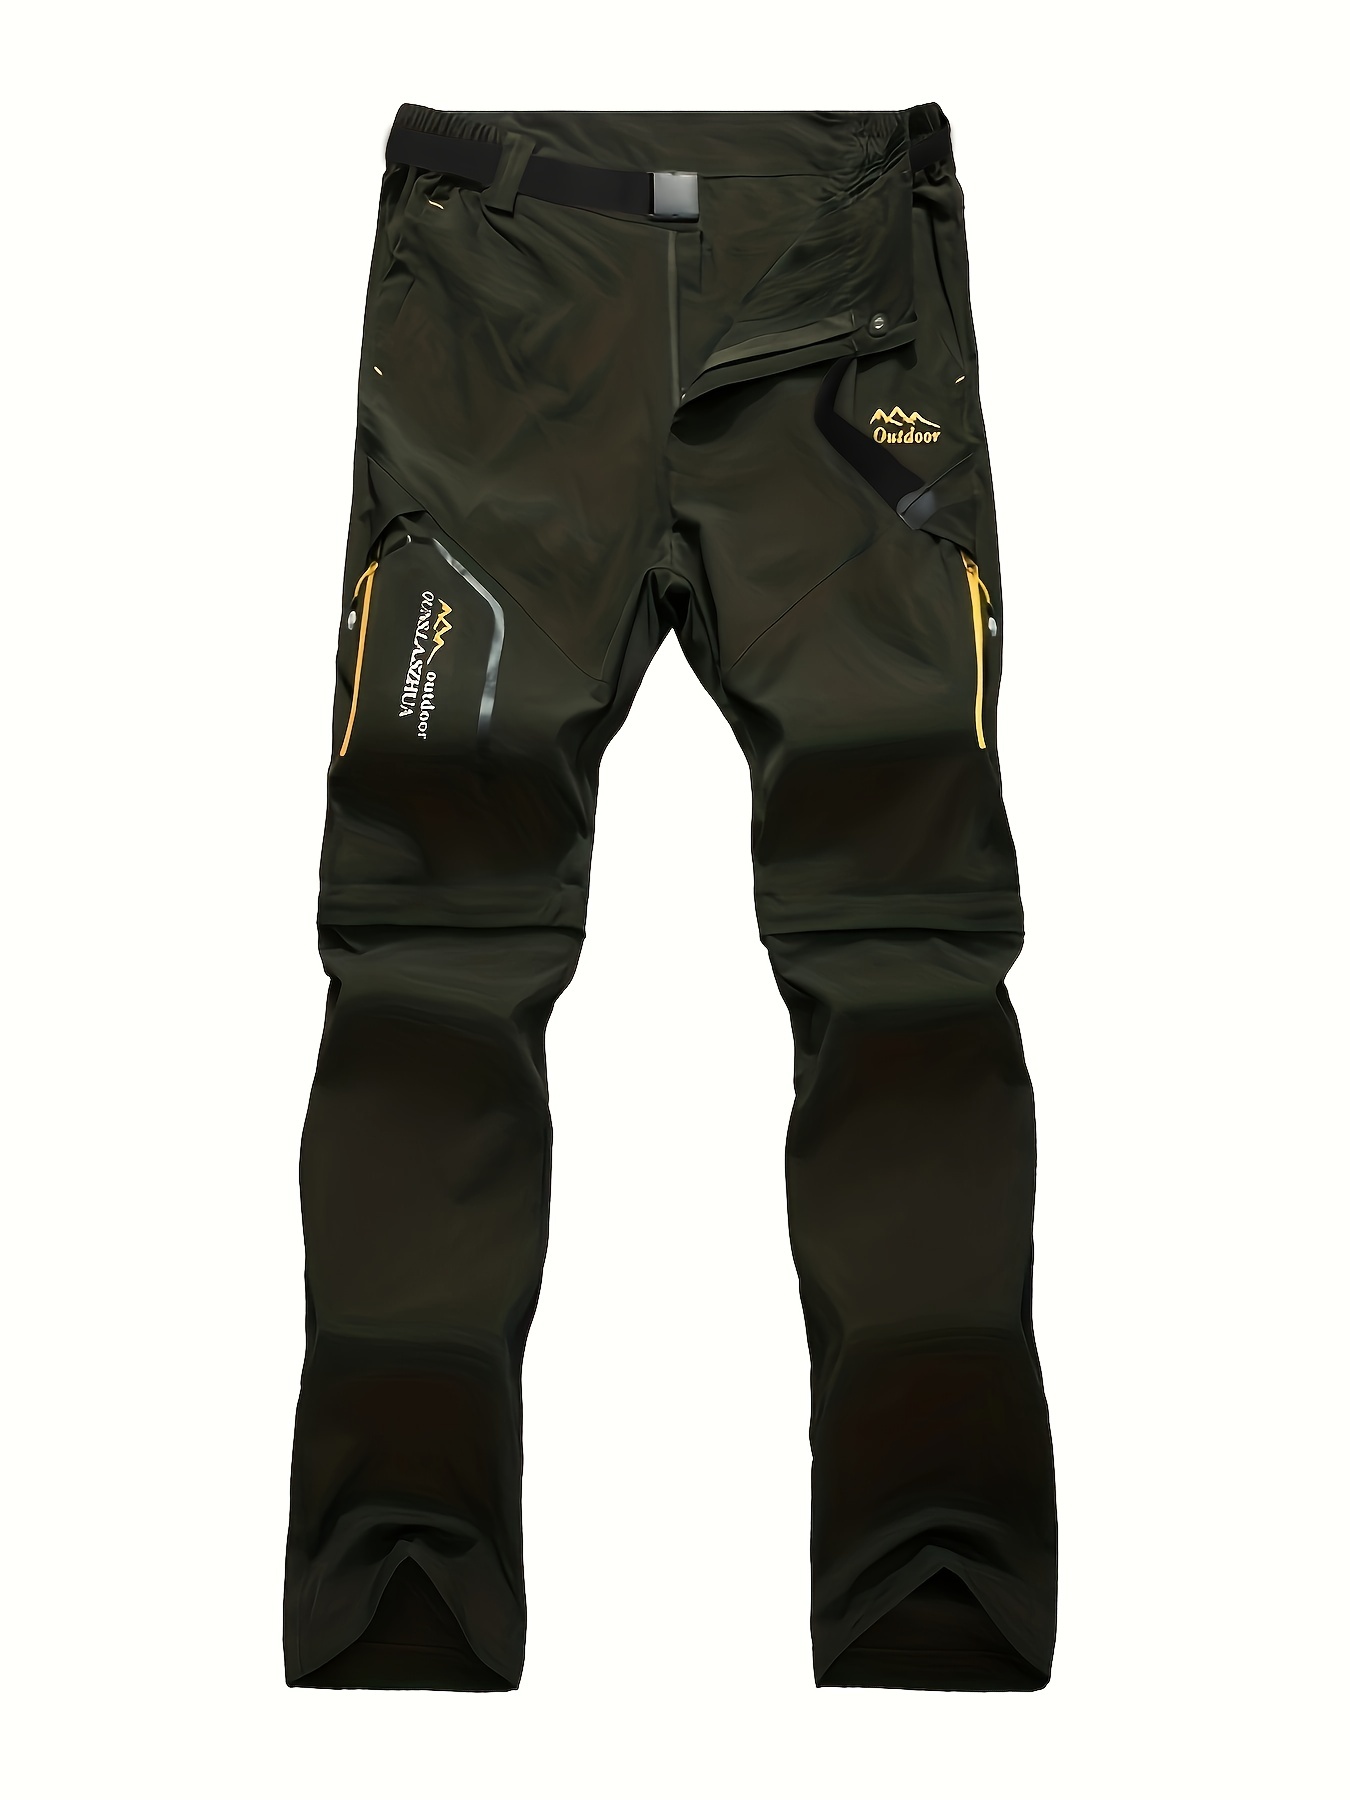 JMIERR Men's Hiking Cargo Pants - Lightweight Waterproof Quick Dry